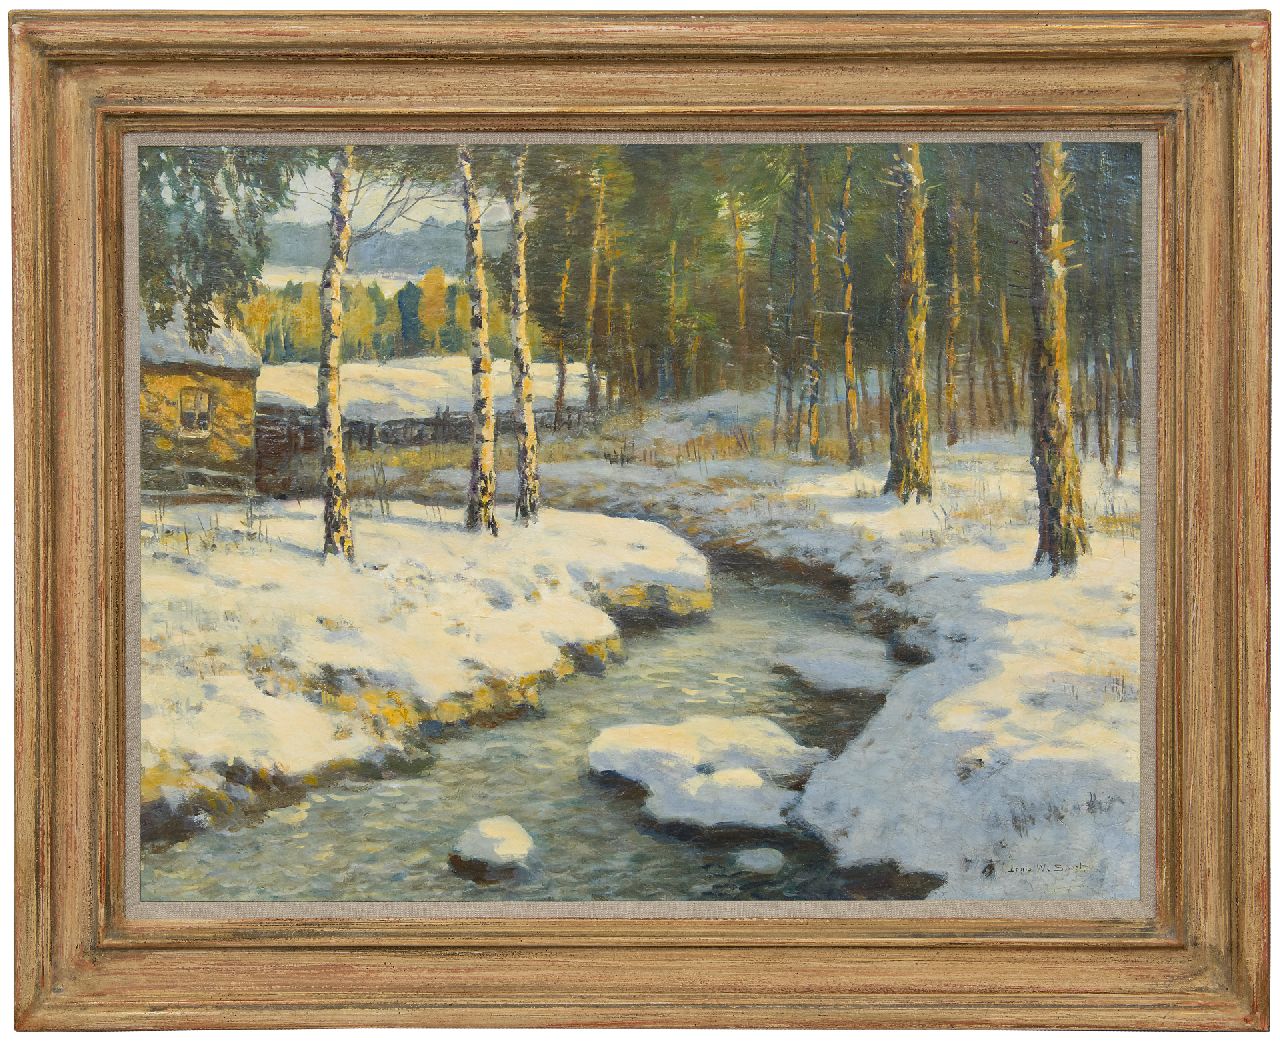 Soest L.W. van | 'Louis' Willem van Soest | Schilderijen te koop aangeboden | Morgenstond in de winter, olieverf op doek 60,3 x 80,4 cm, gesigneerd rechtsonder